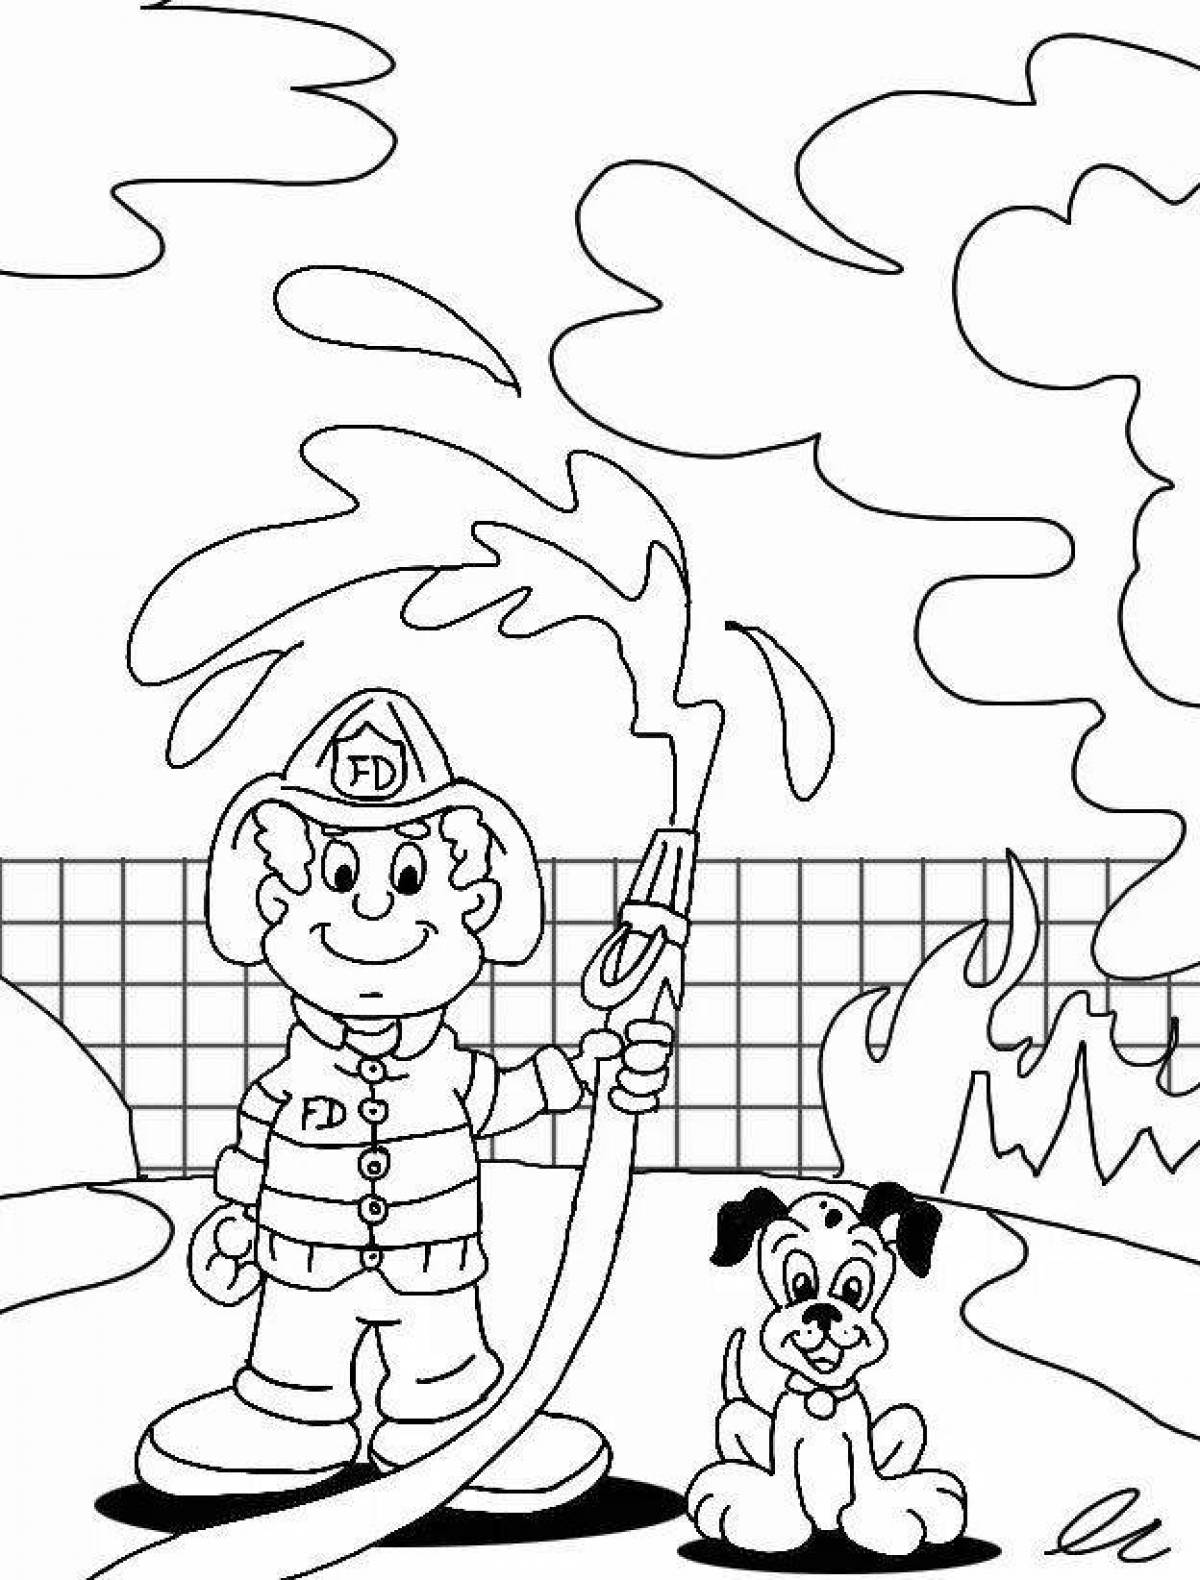 Tempting fire safety in kindergarten